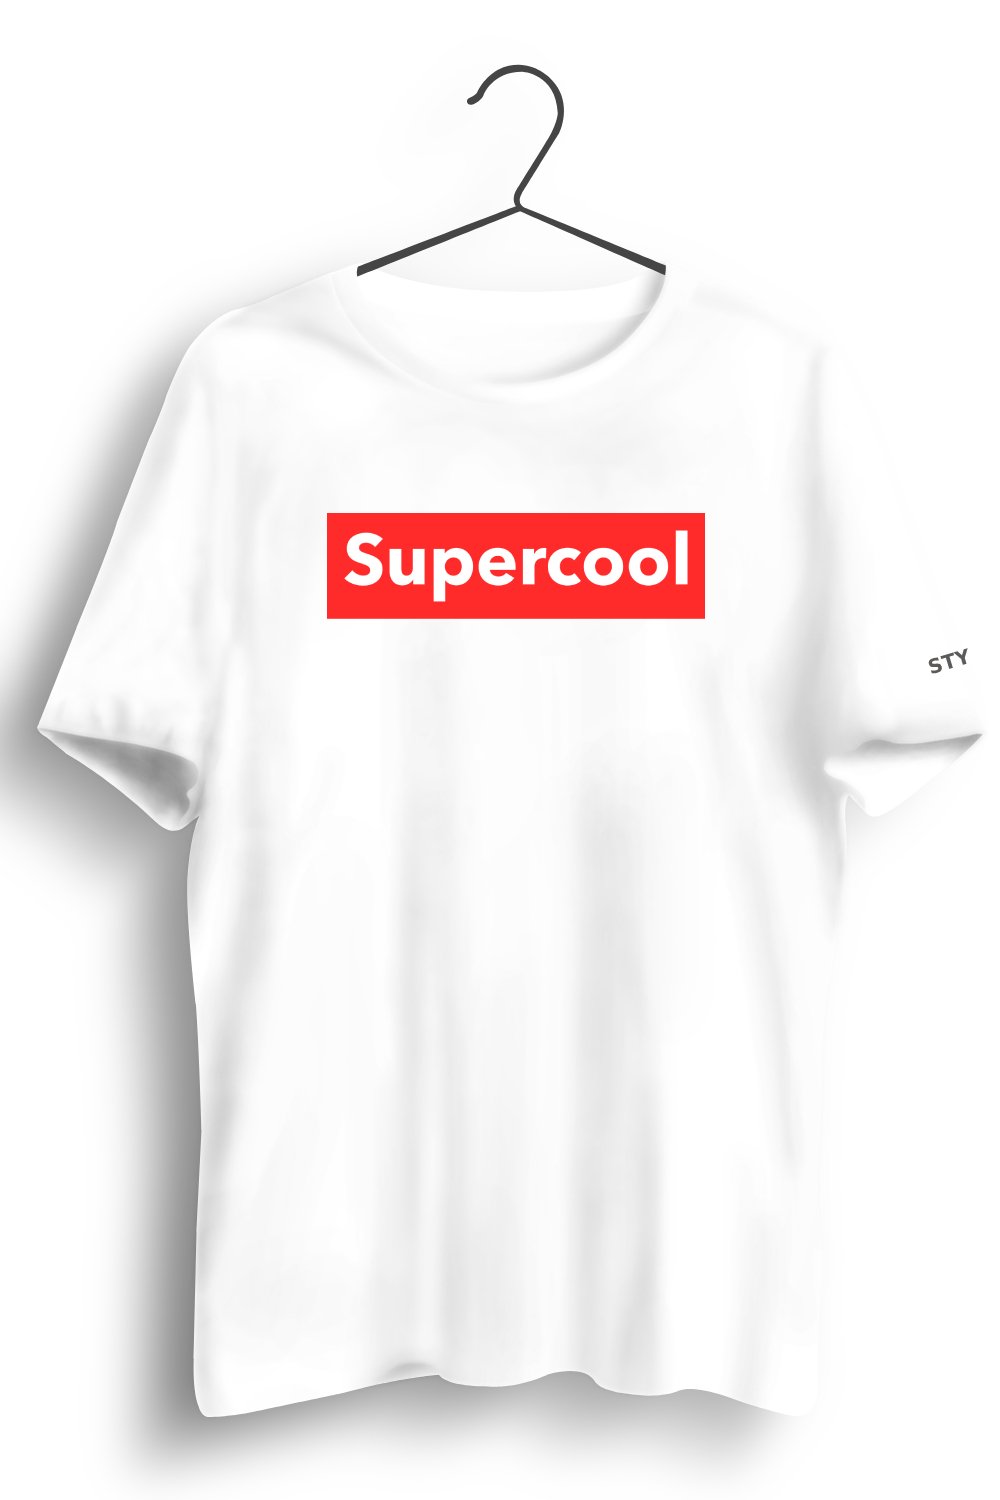 Supercool Graphic Printed White Tshirt